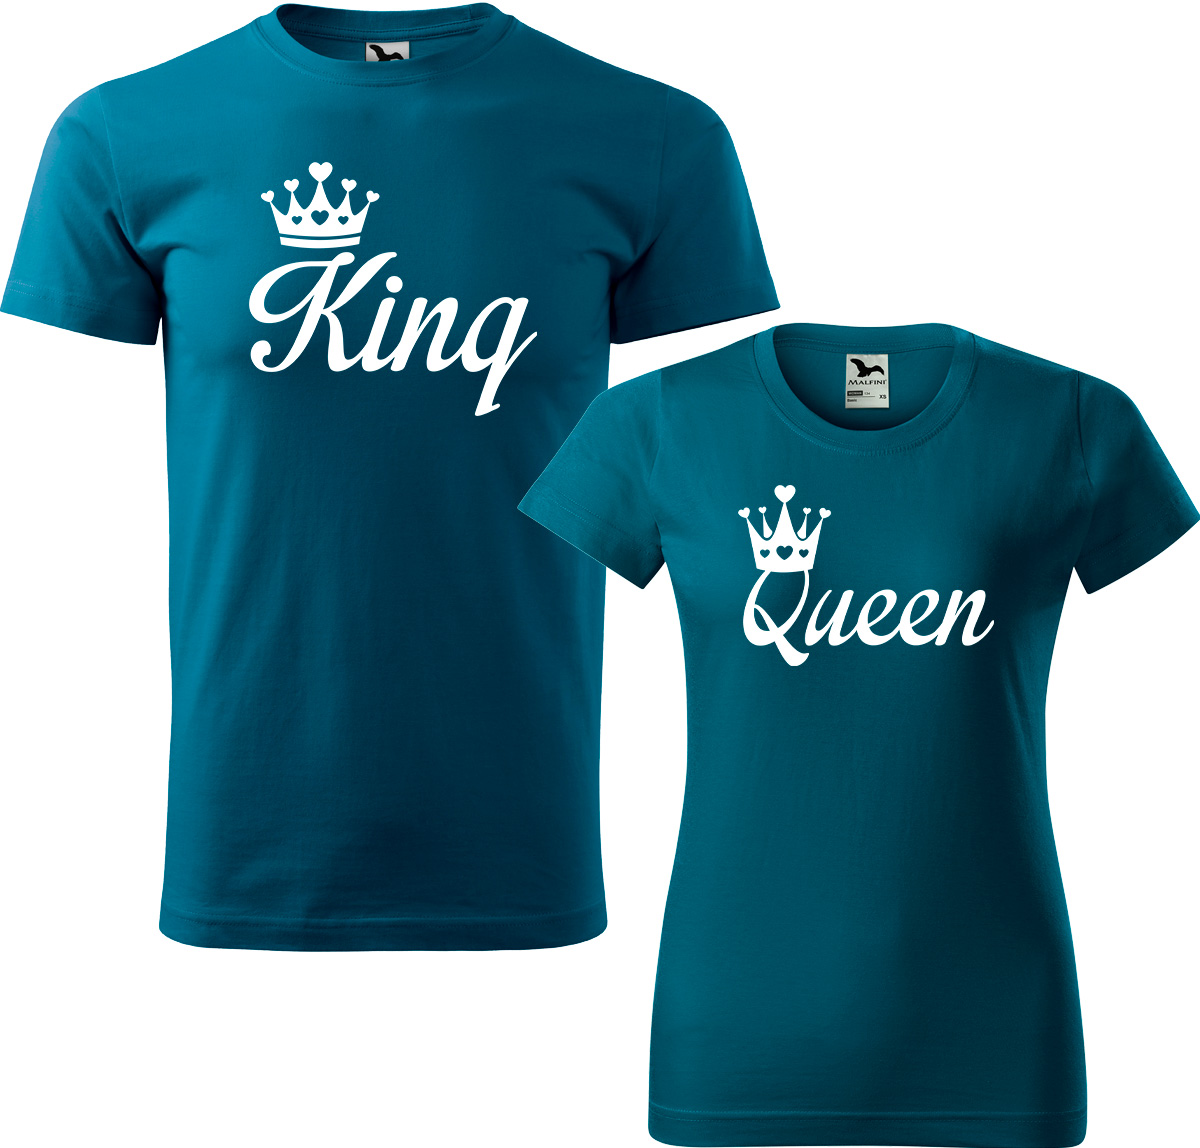 Trička pro páry - King a queen Barva: Petrolejová (93), Velikost dámské tričko: 3XL, Velikost pánské tričko: 4XL